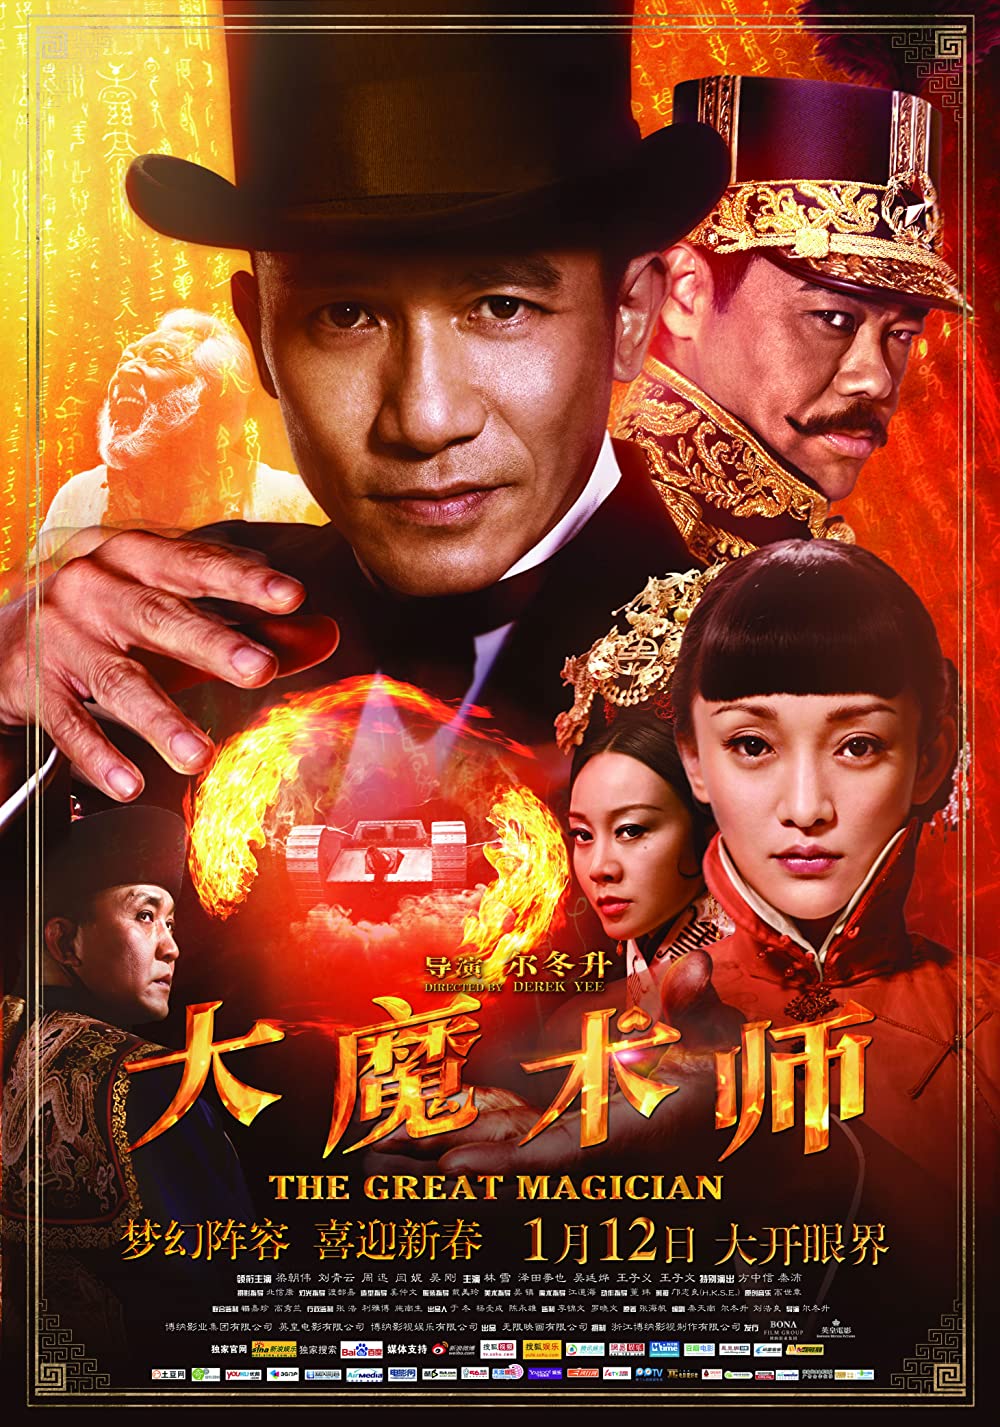 ดูหนังออนไลน์ฟรี The Great Magician (2011) ยอดพยัคฆ์ นักมายากล